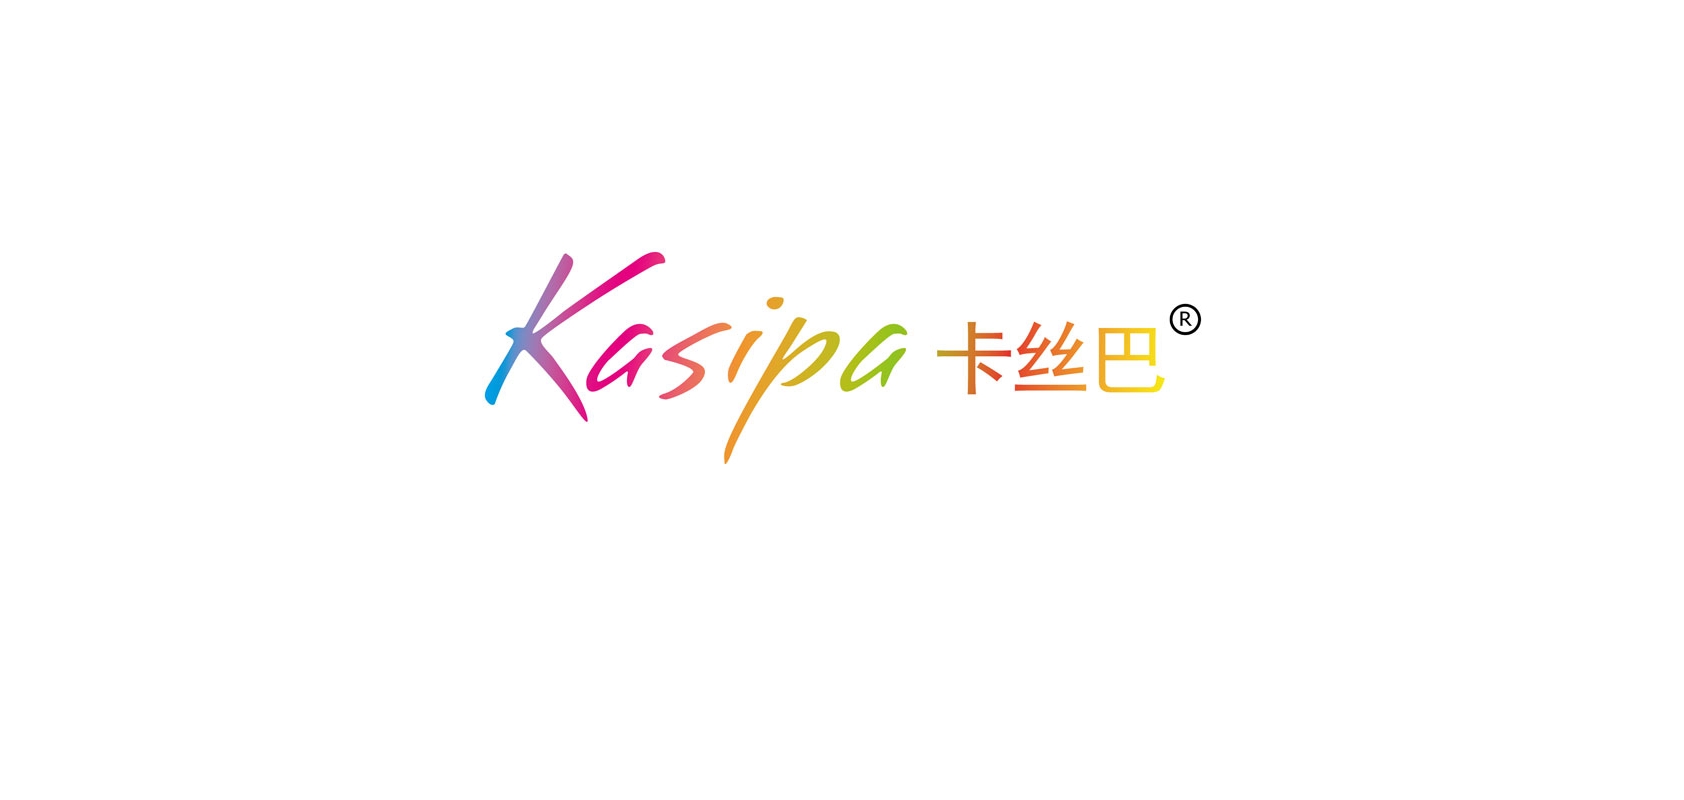 kasipa是什么牌子_kasipa品牌怎么样?